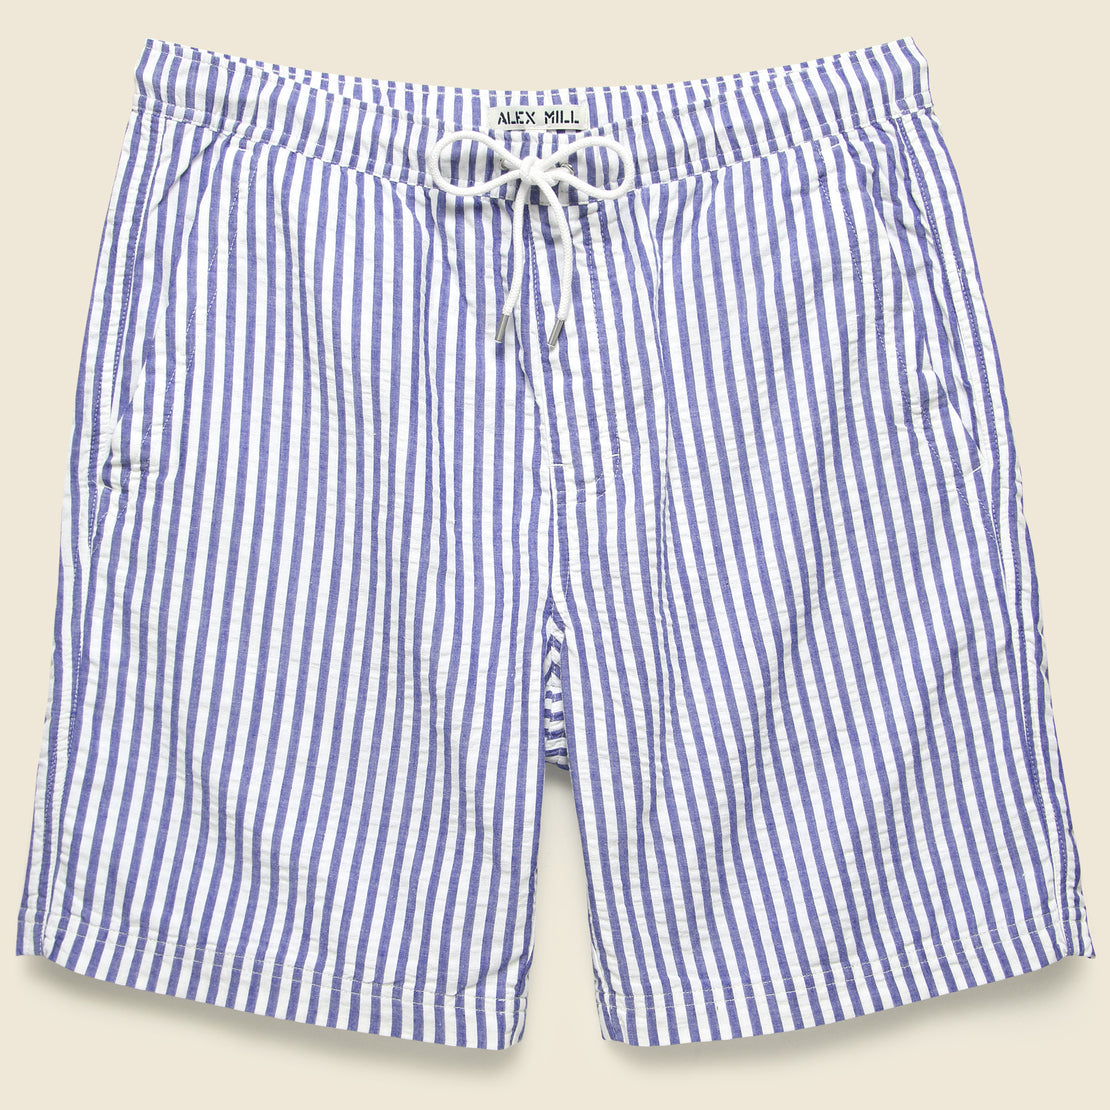 Alex Mill Seersucker Wide Stripe Saturday Shorts - Blue/White